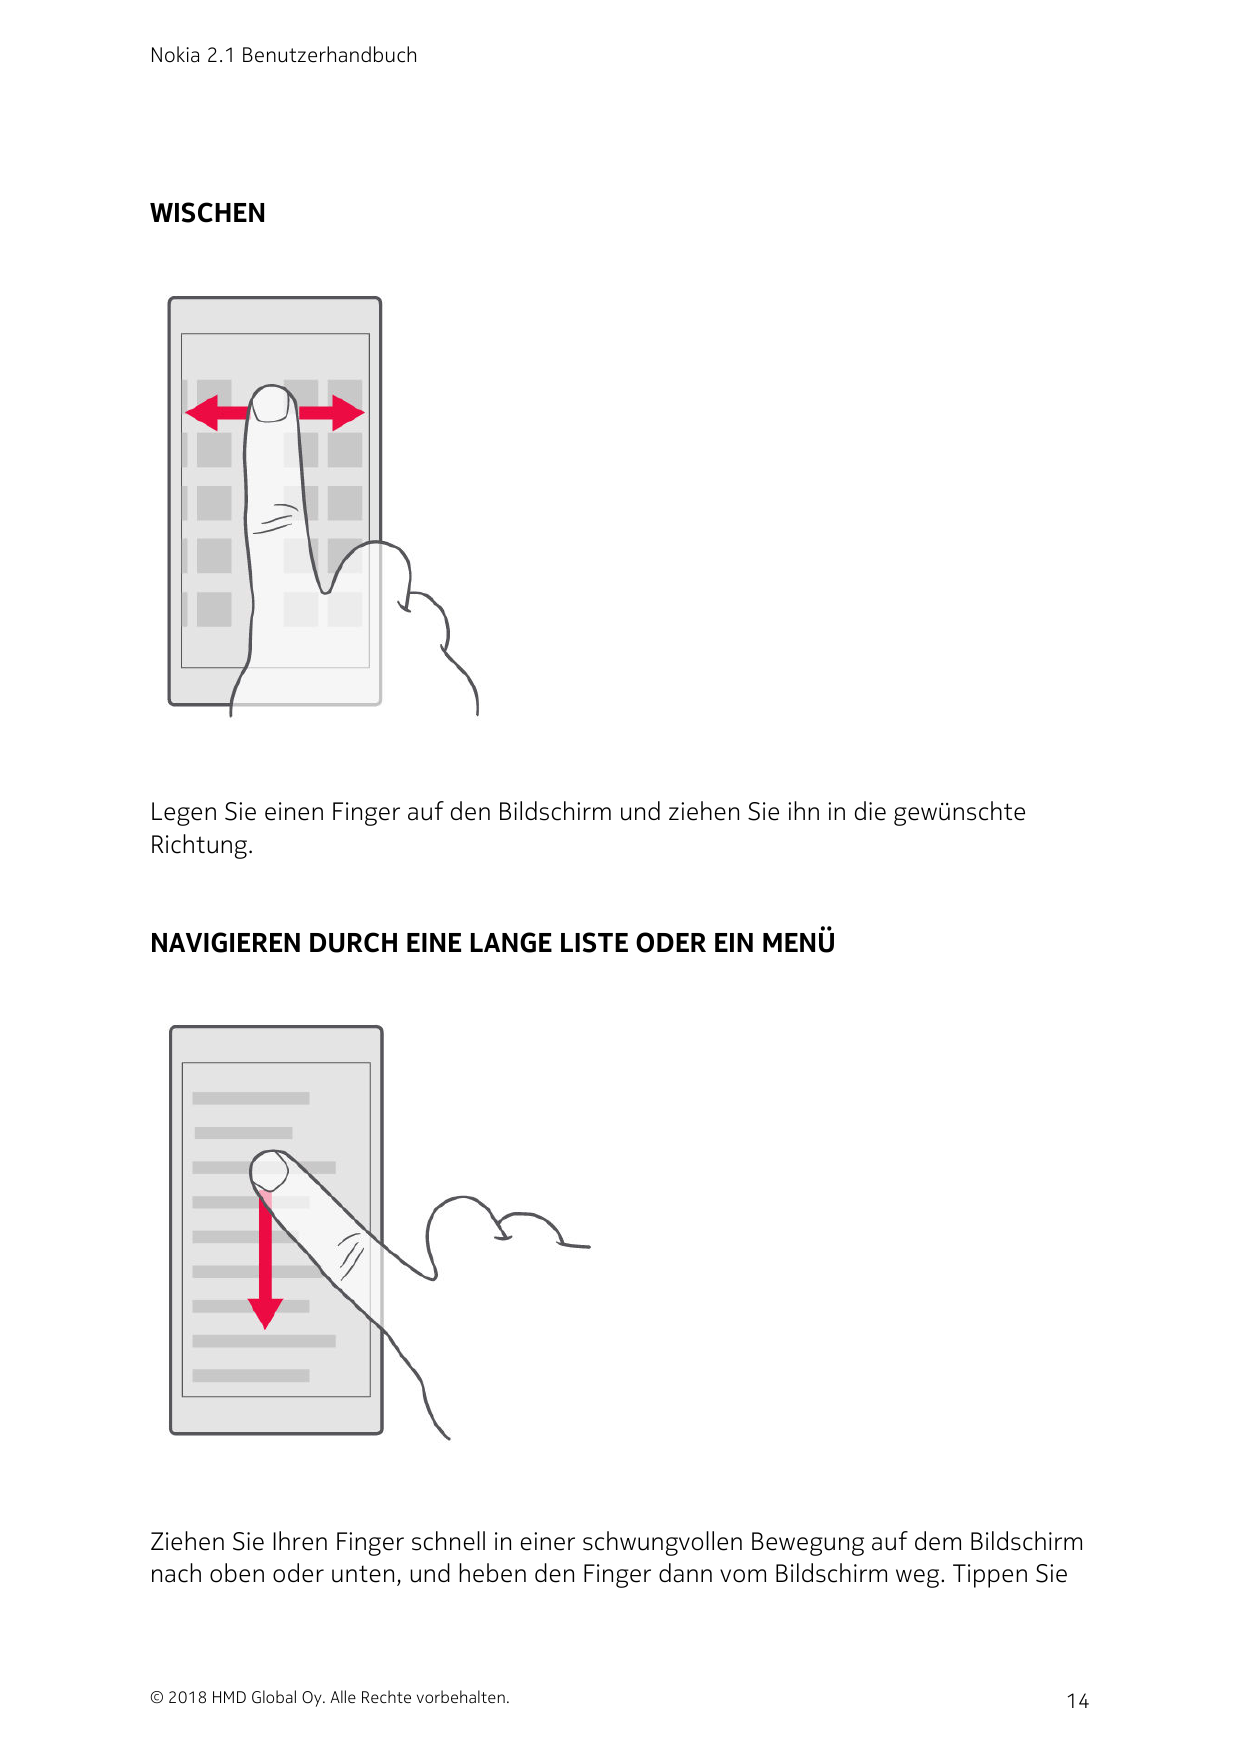 Nokia 2.1 BenutzerhandbuchWISCHENLegen Sie einen Finger auf den Bildschirm und ziehen Sie ihn in die gewünschteRichtung.NAVIGIER